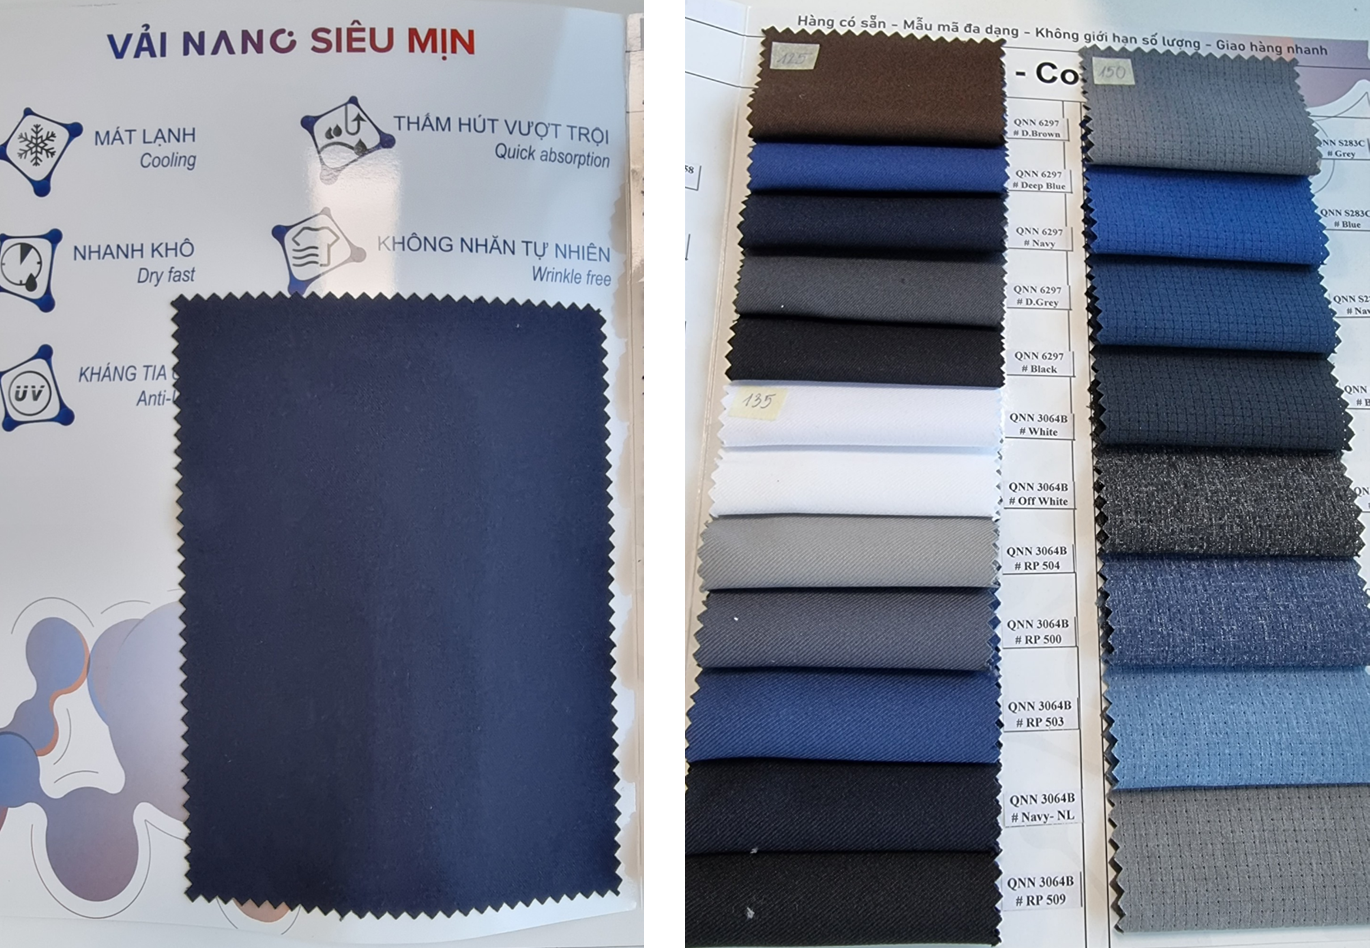 Vải Nano cũng là dòng chất liệu với ưu điểm nổi trội khi ứng dụng vào may đồng phục nhà hàng.